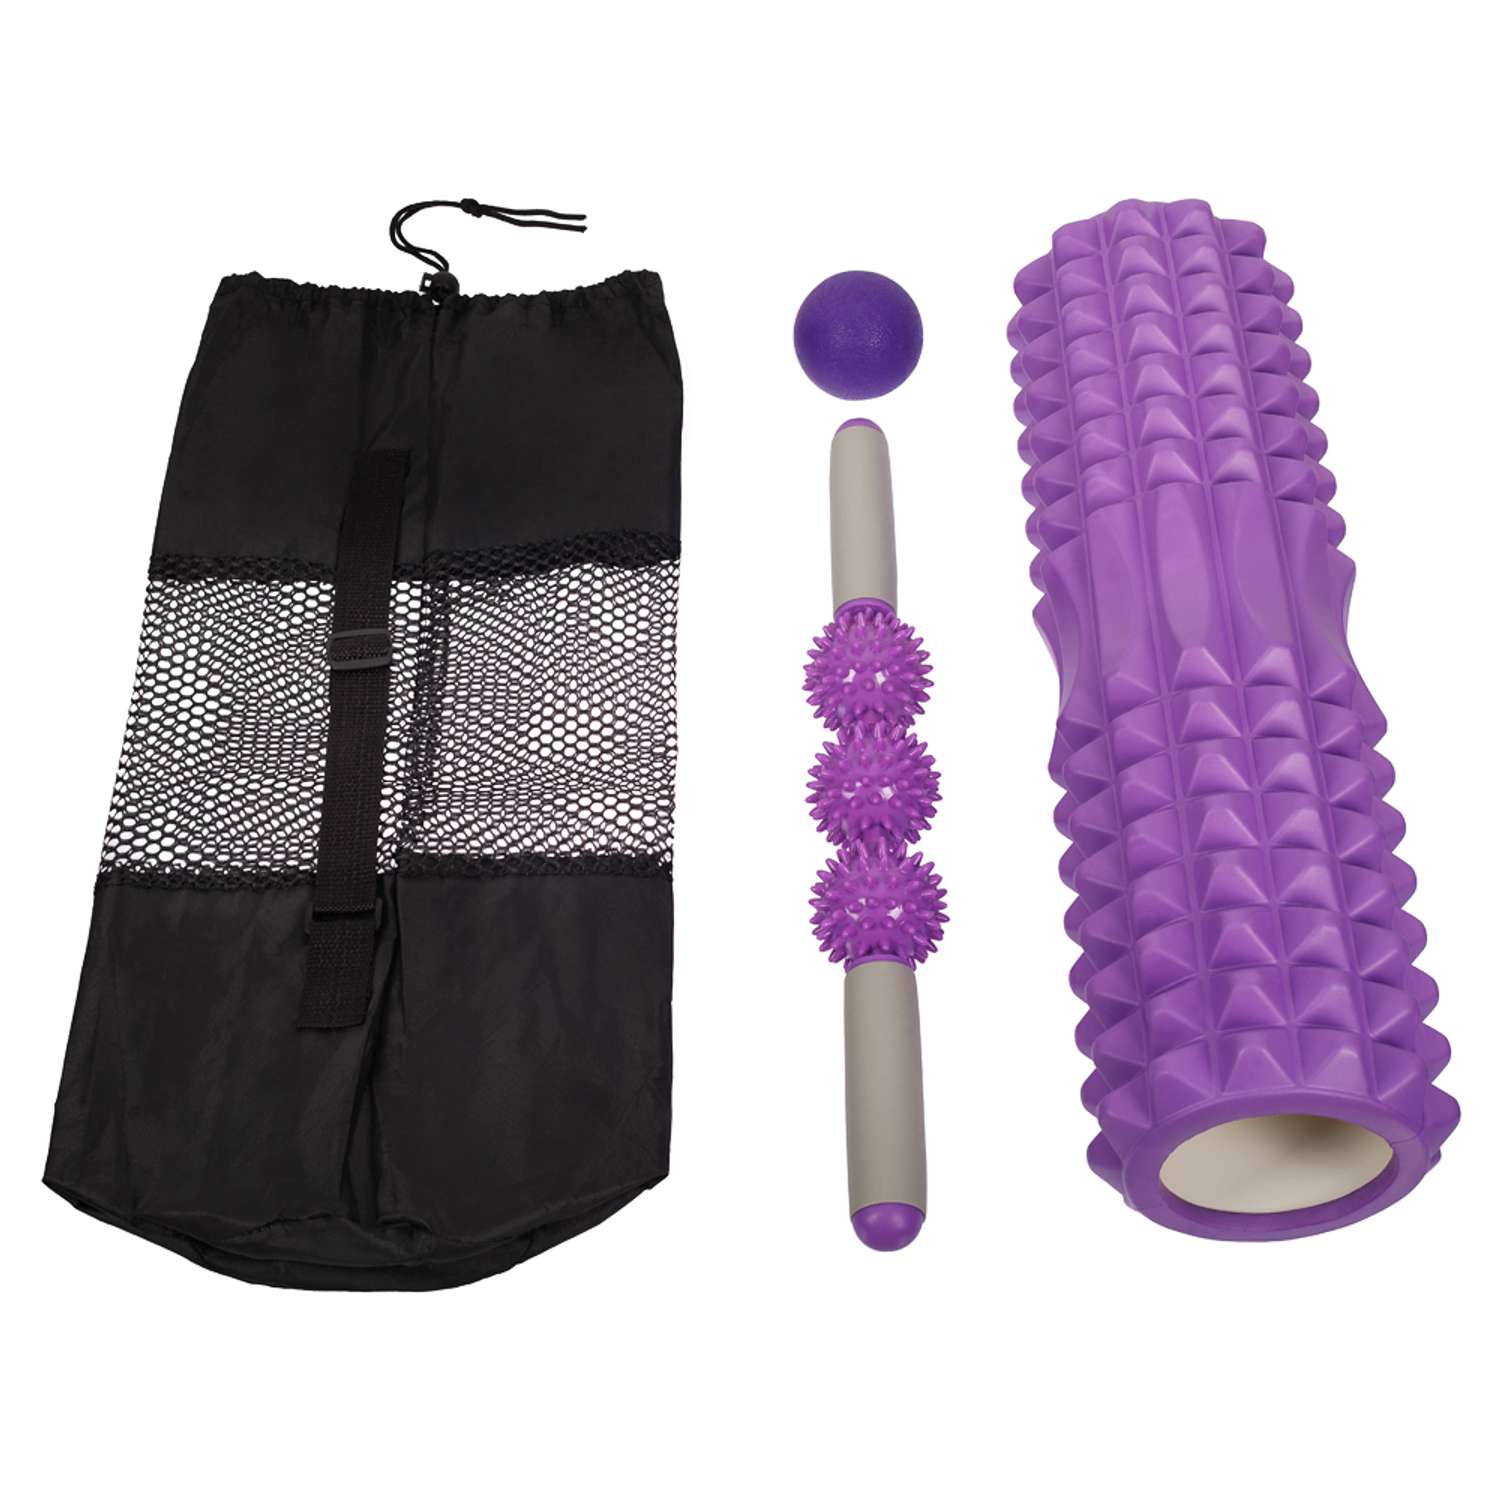 Комплект для фитнеса STRONG BODY 3 предмета: ролик массажный 45 см. ручной массажер и МФР мяч - фото 11